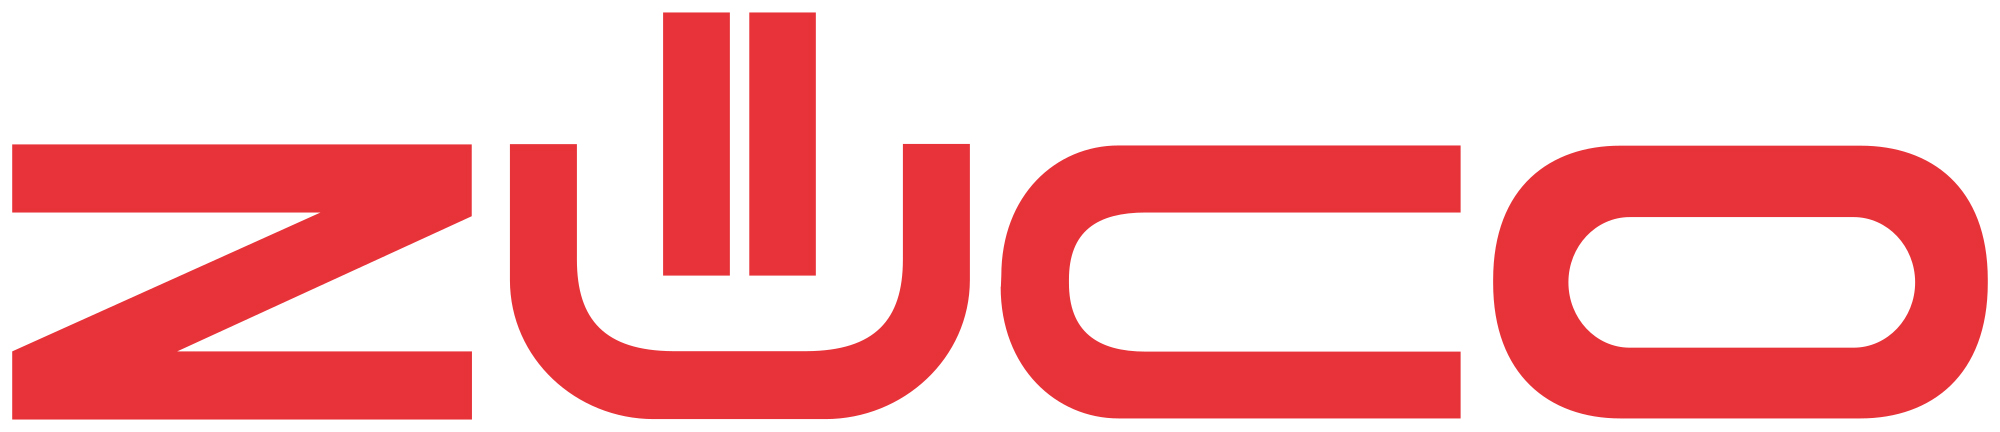 Logo-Zueco